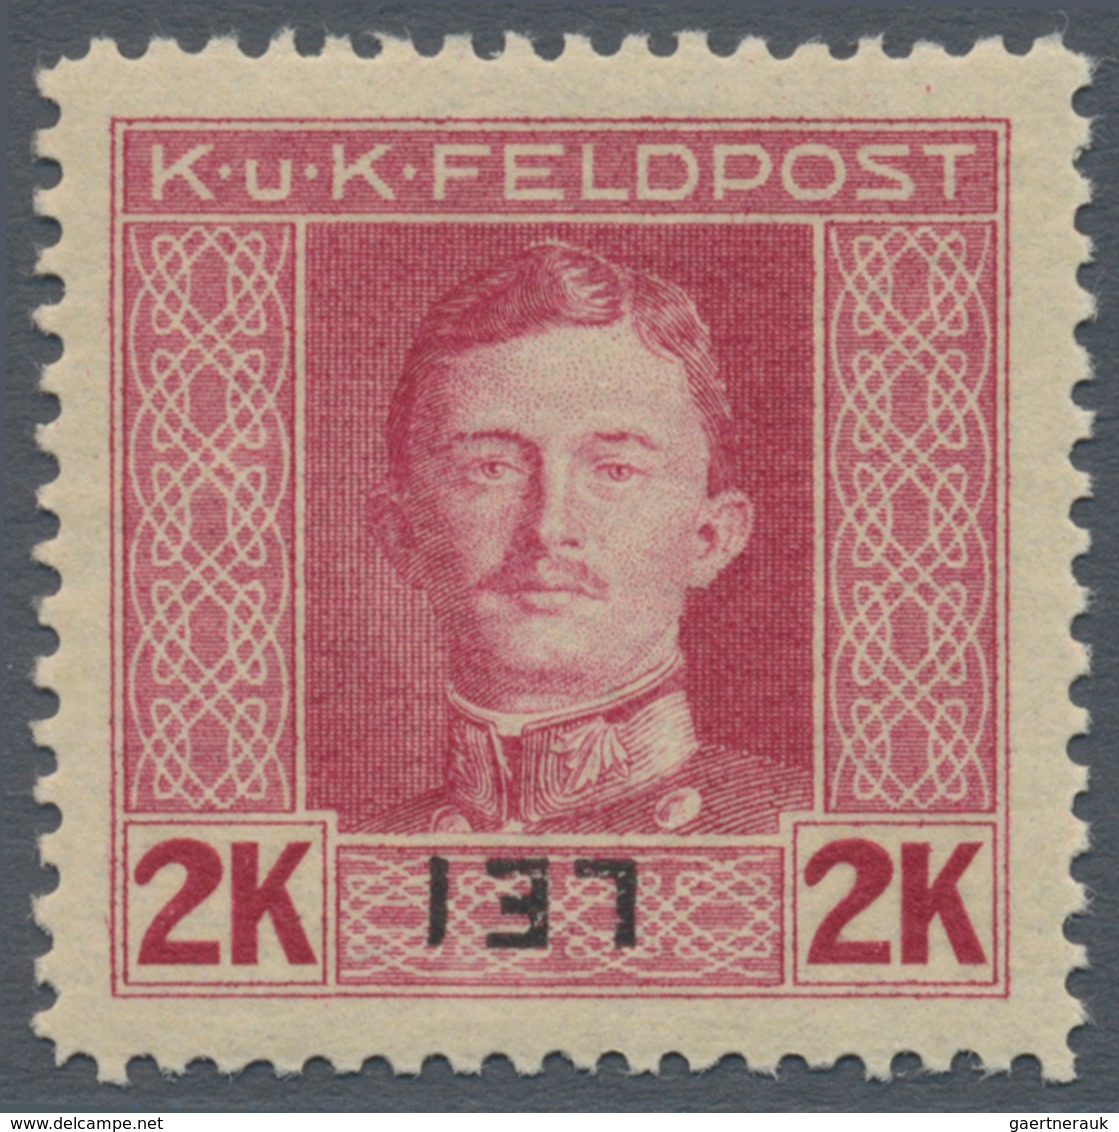 Österreichisch-Ungarische Feldpost - Rumänien: 1917, Siebzehn Marken Kaiser Karl 3 H bis 4 K mit KOP